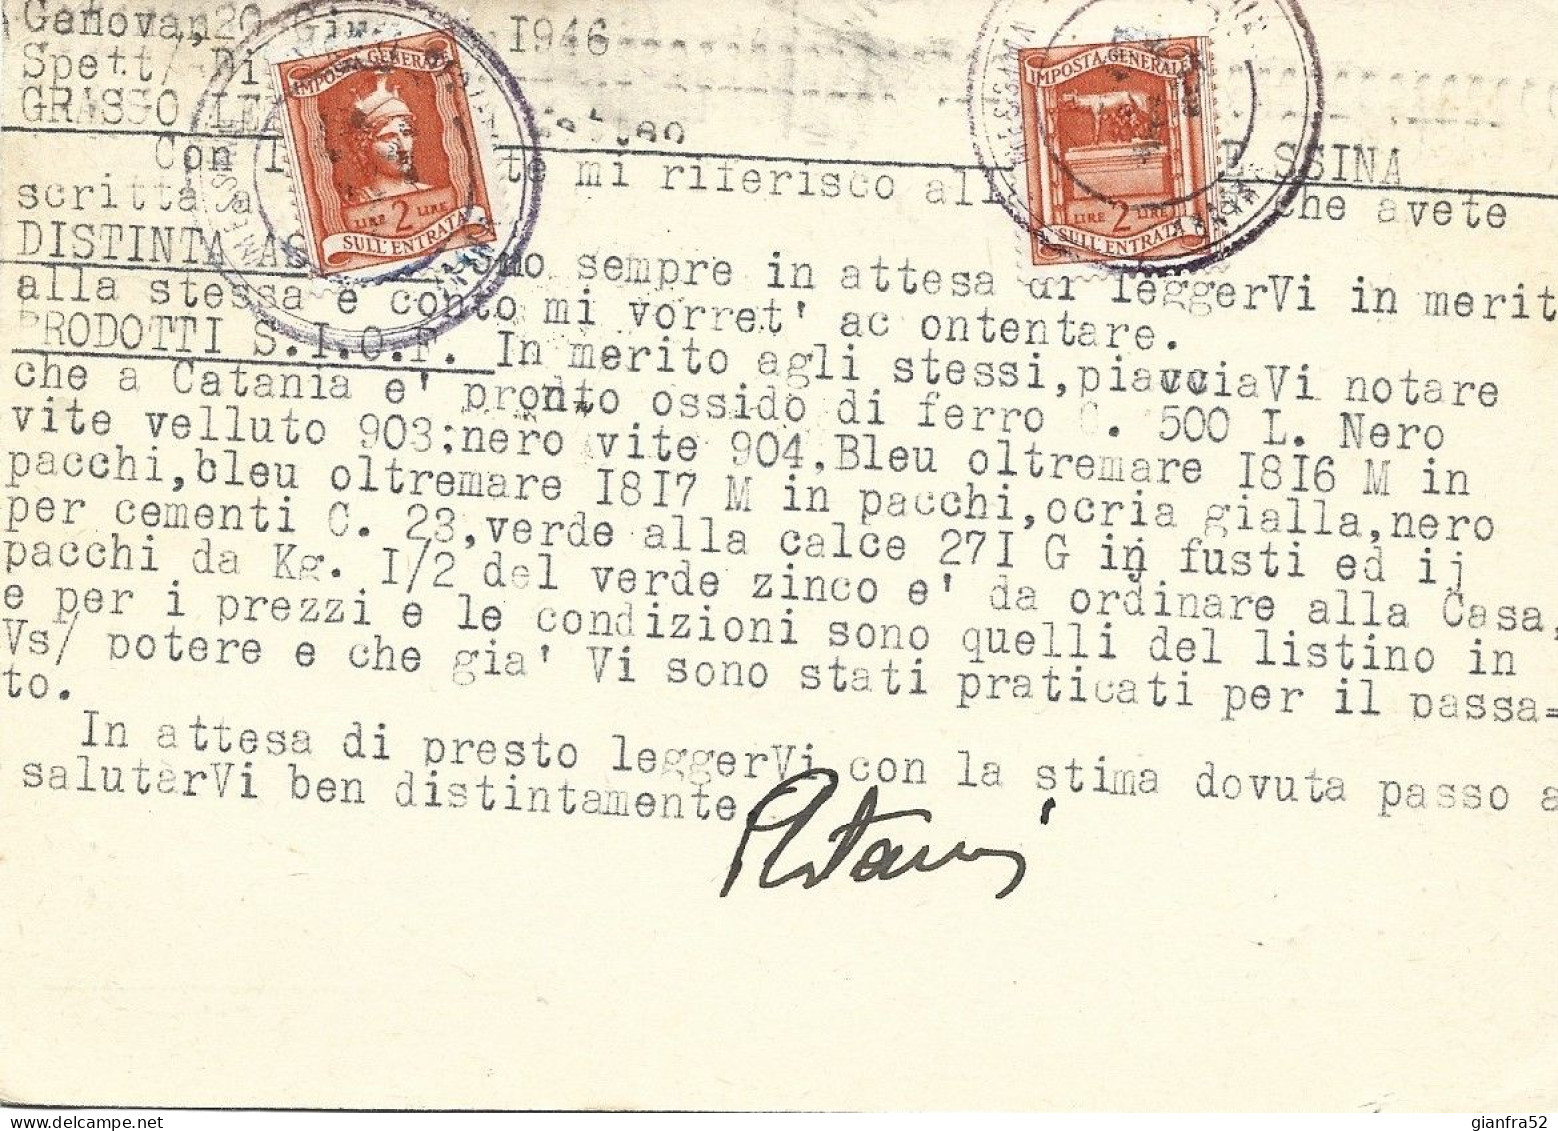 STORIA POSTALE 20/6/1946 CARTOLINA COMMERCIALE "BIANCO ASTREA" SPEDITA A STAMPE LIT 3 CON LIT 3 DEMOC. ISOLATO N. 553 - Reclame